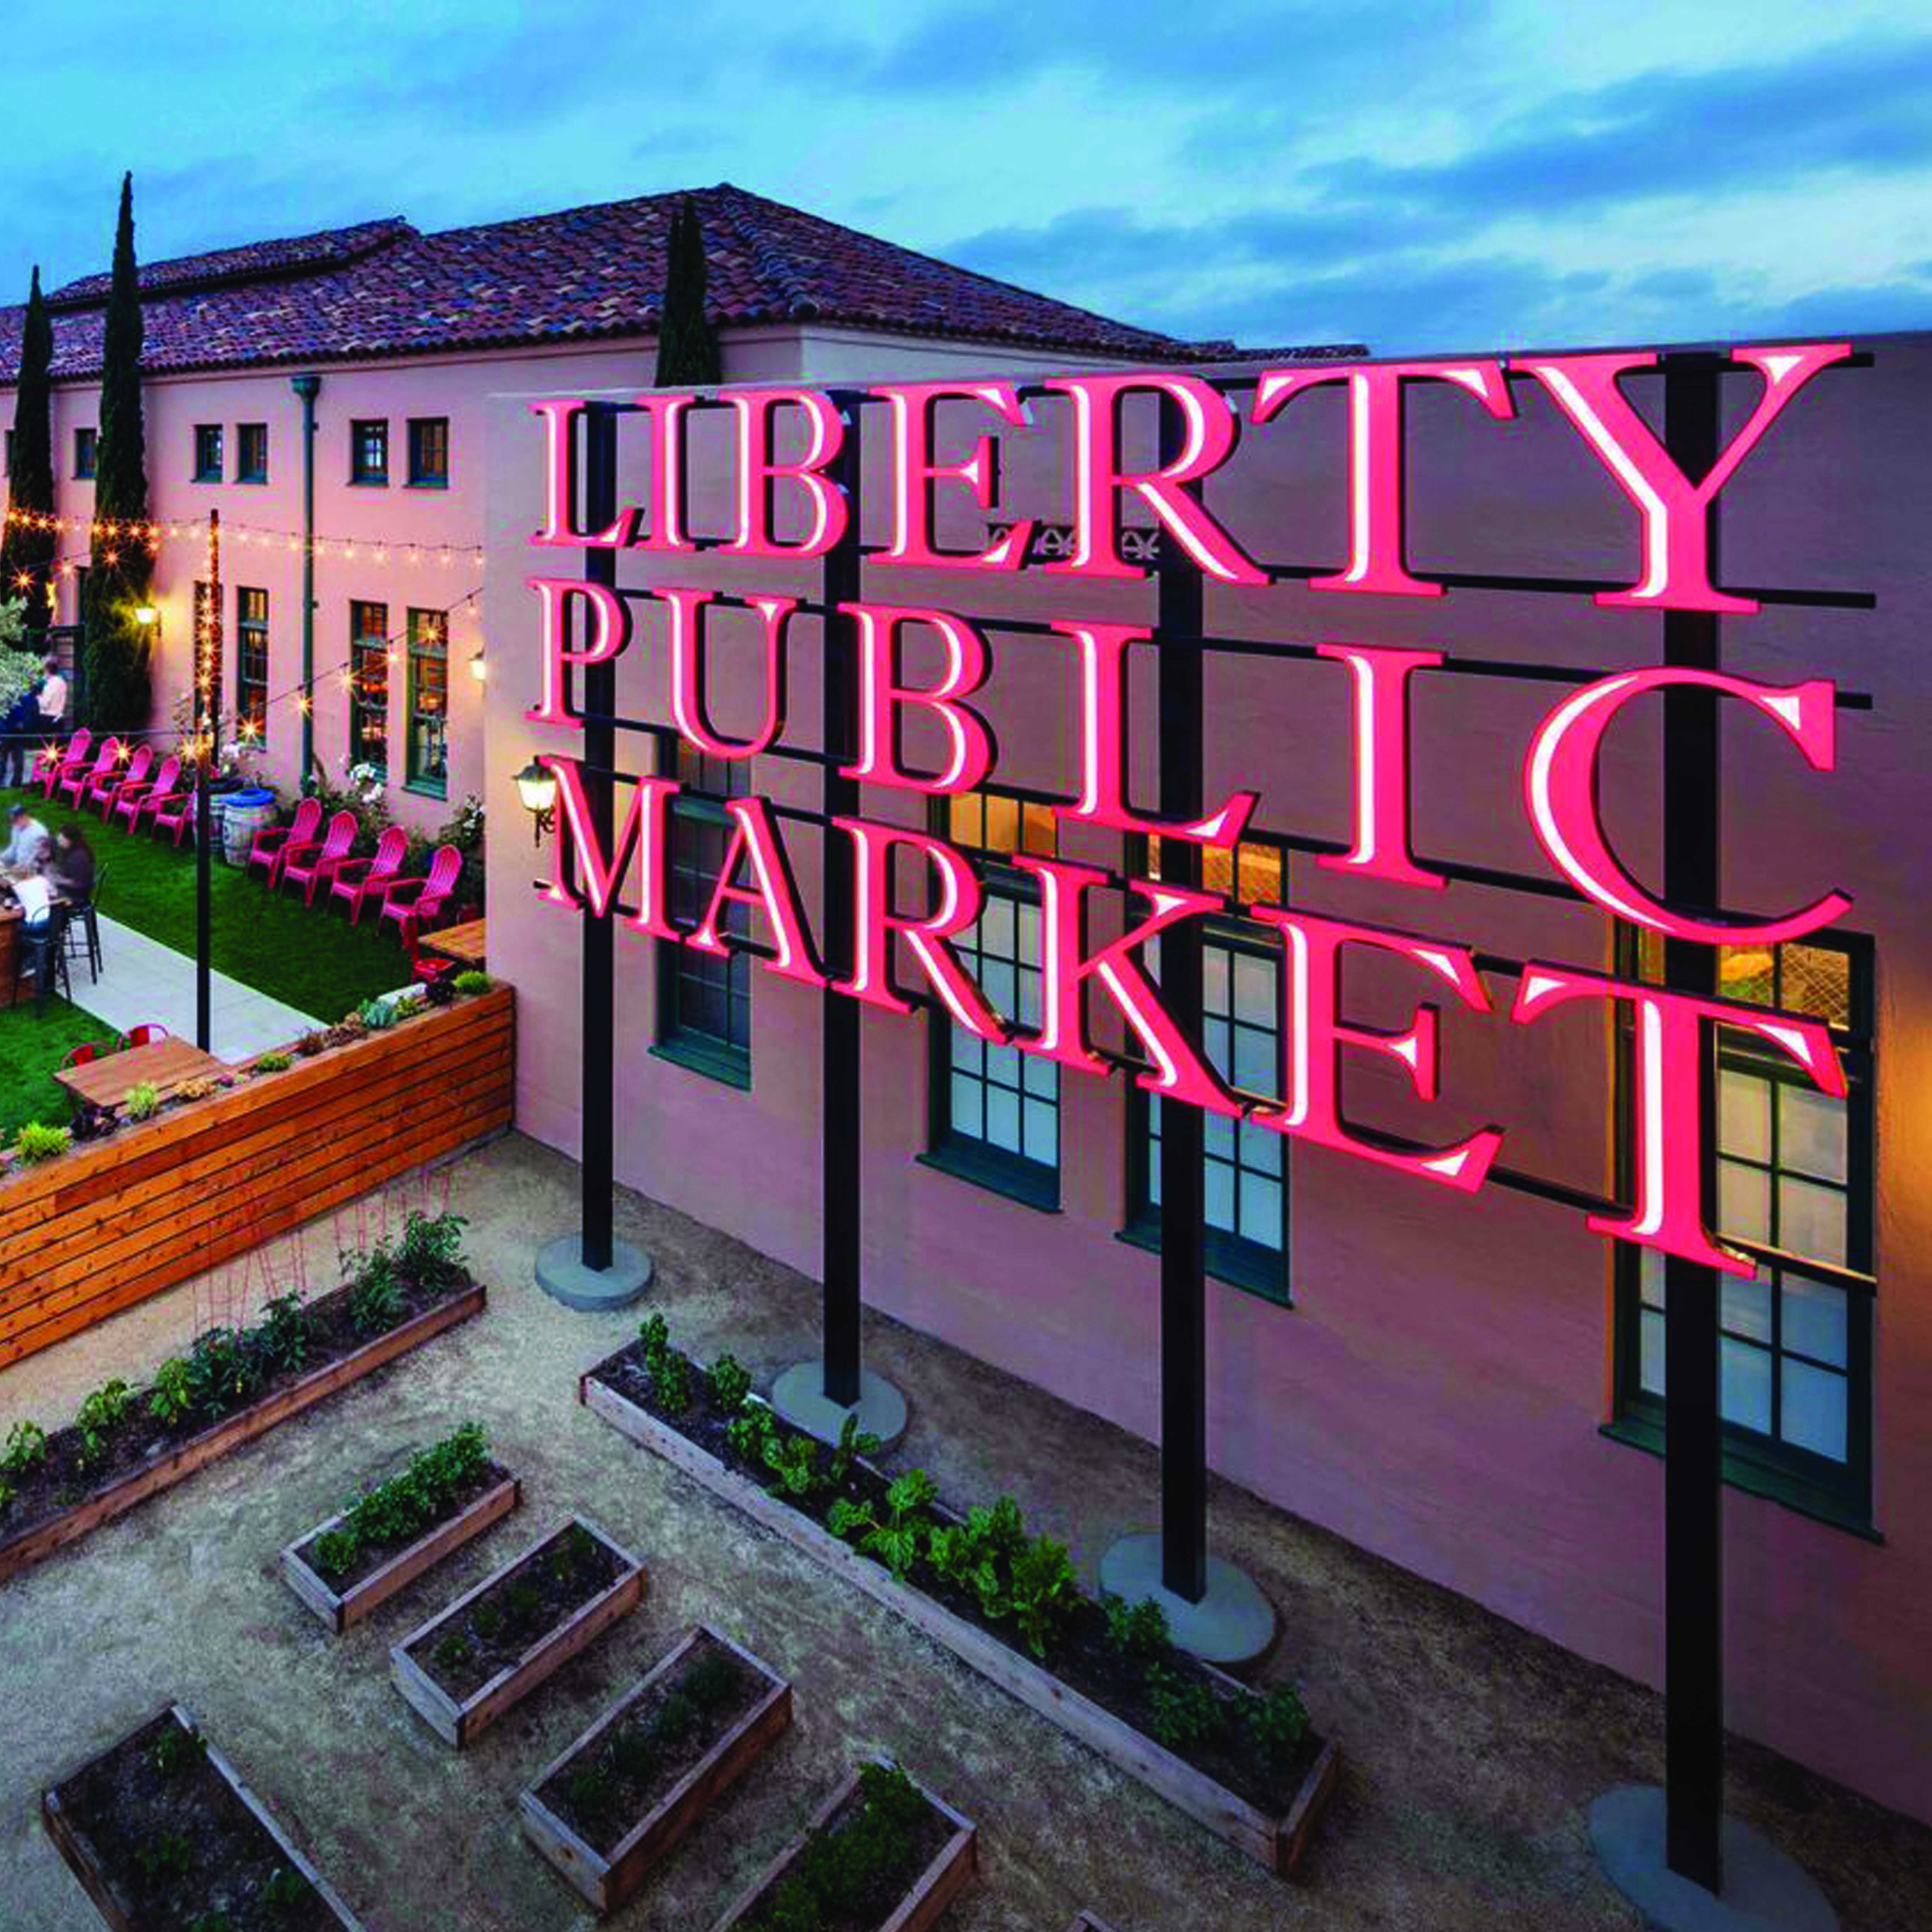 Liberty Public Market